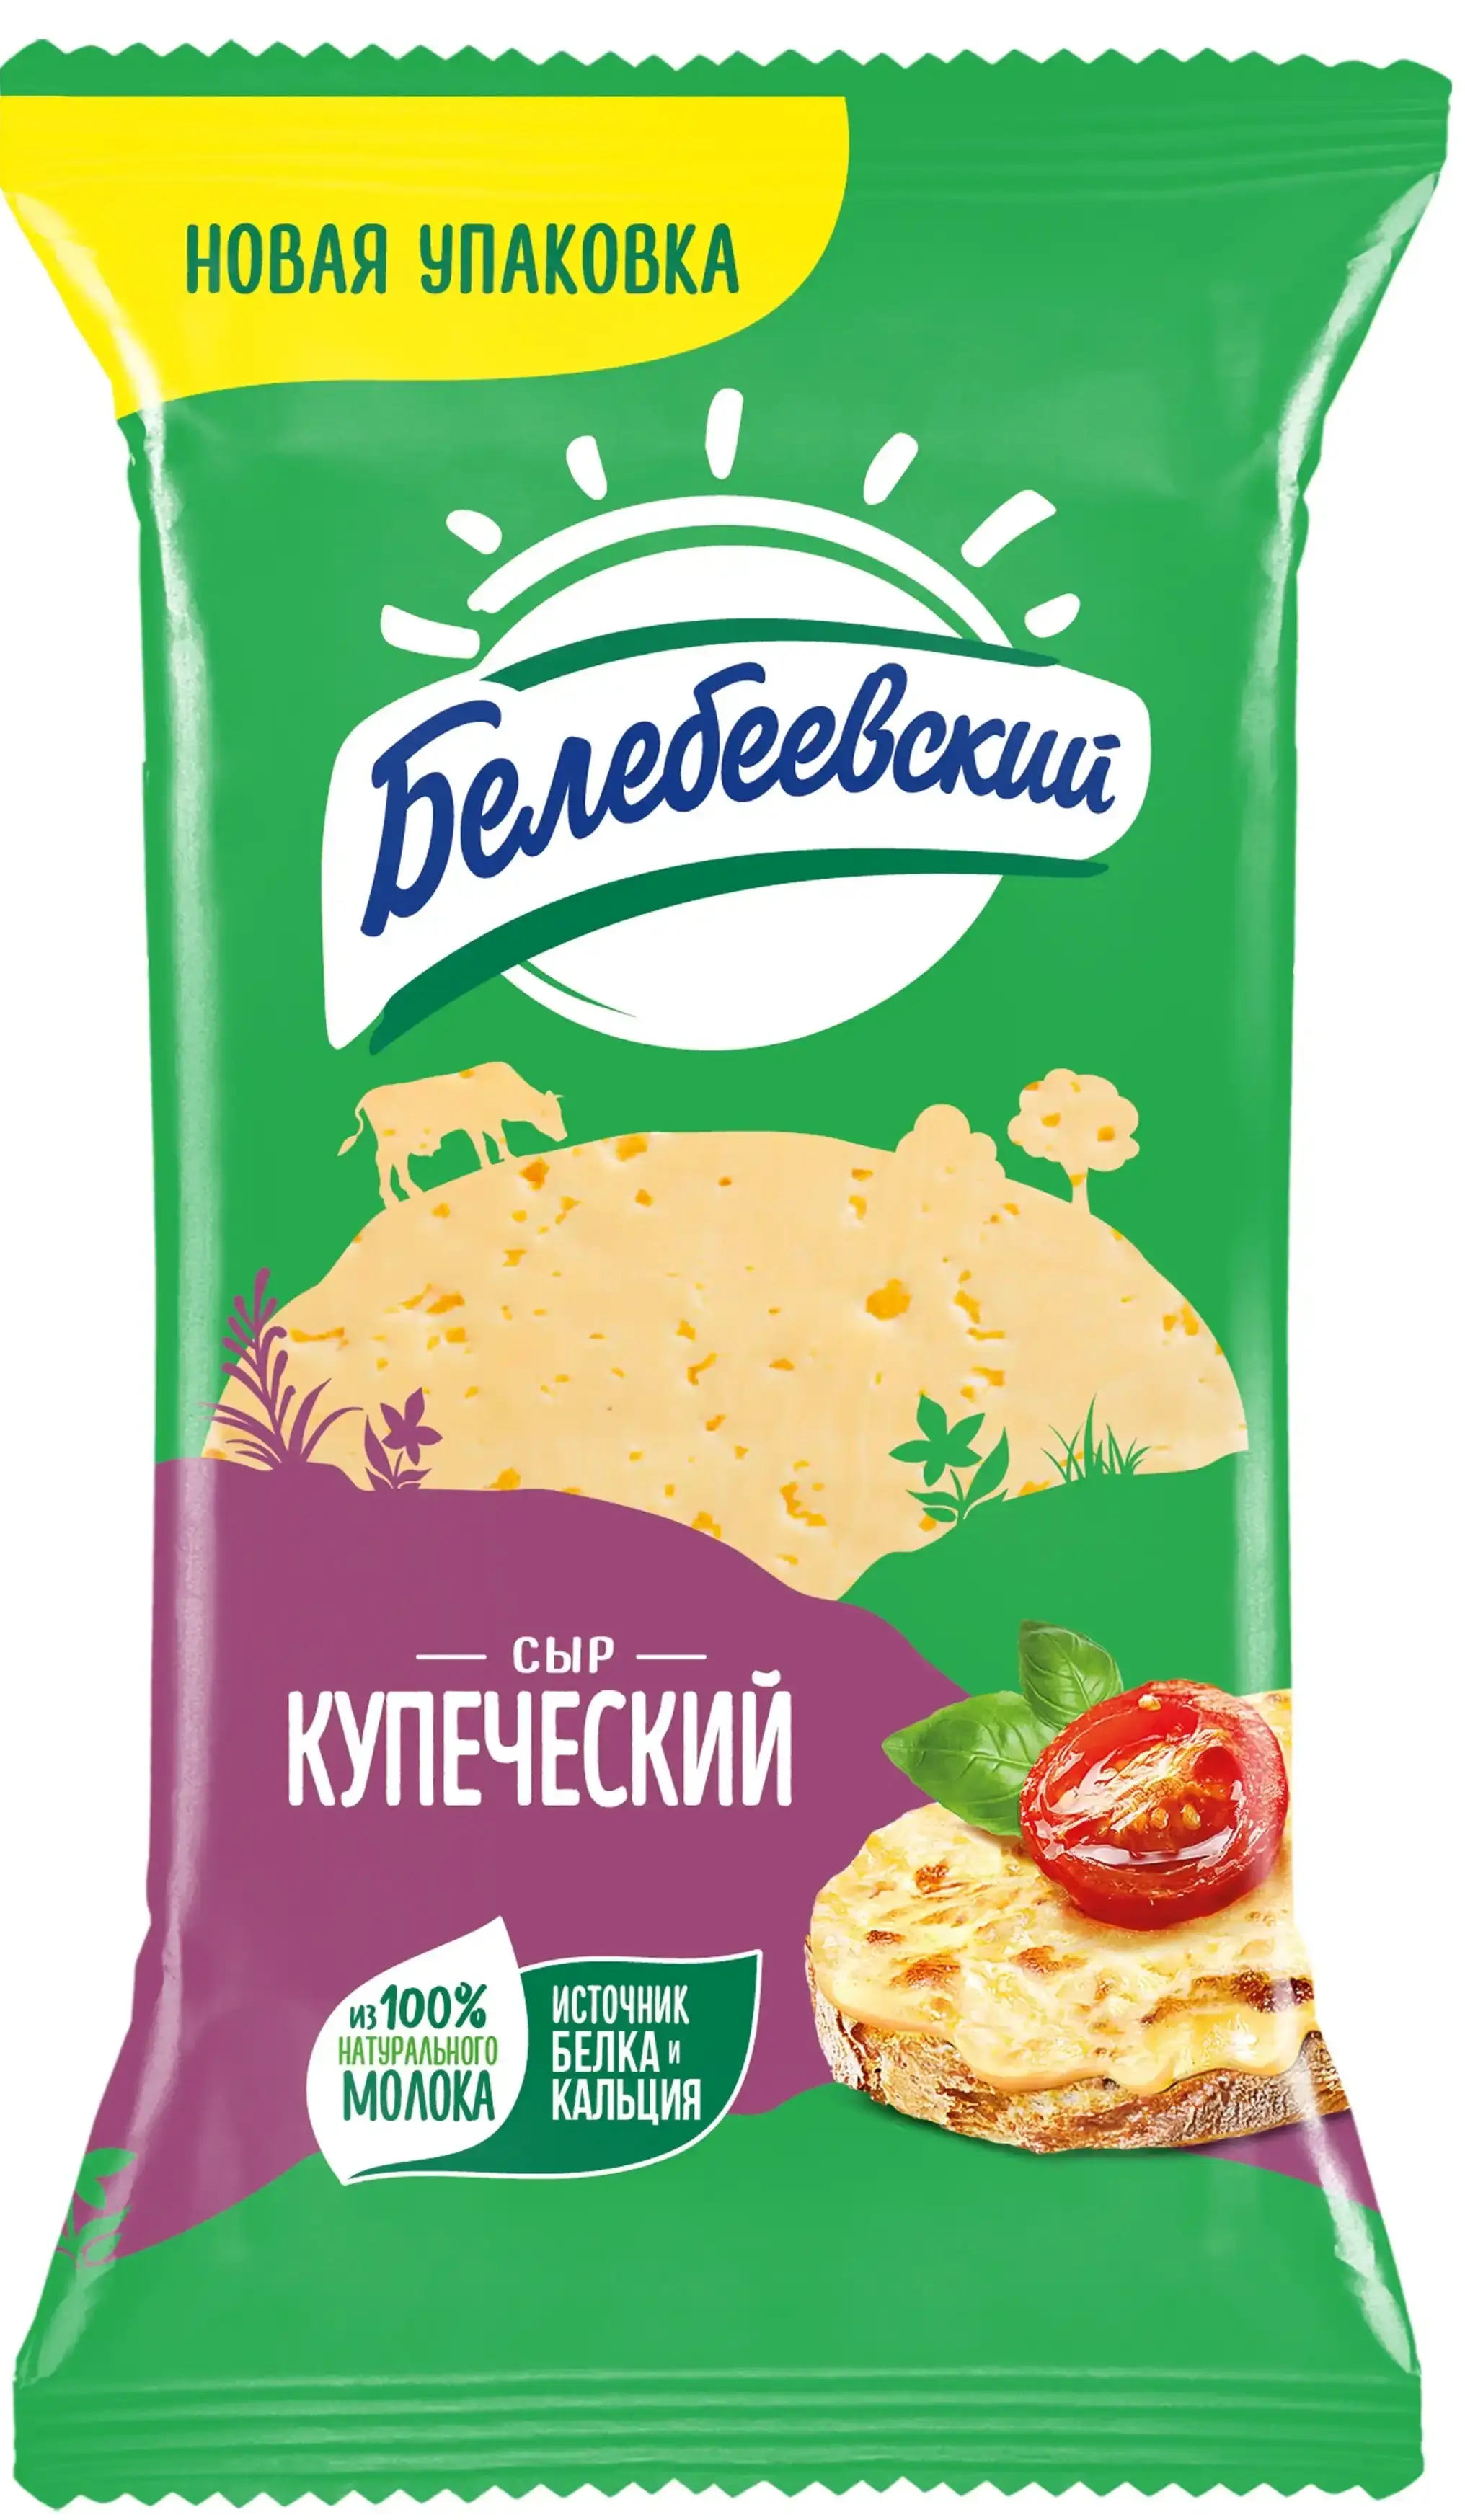 Сыр Белебеевский Купеческий  52% 190г флоупак бзмж.